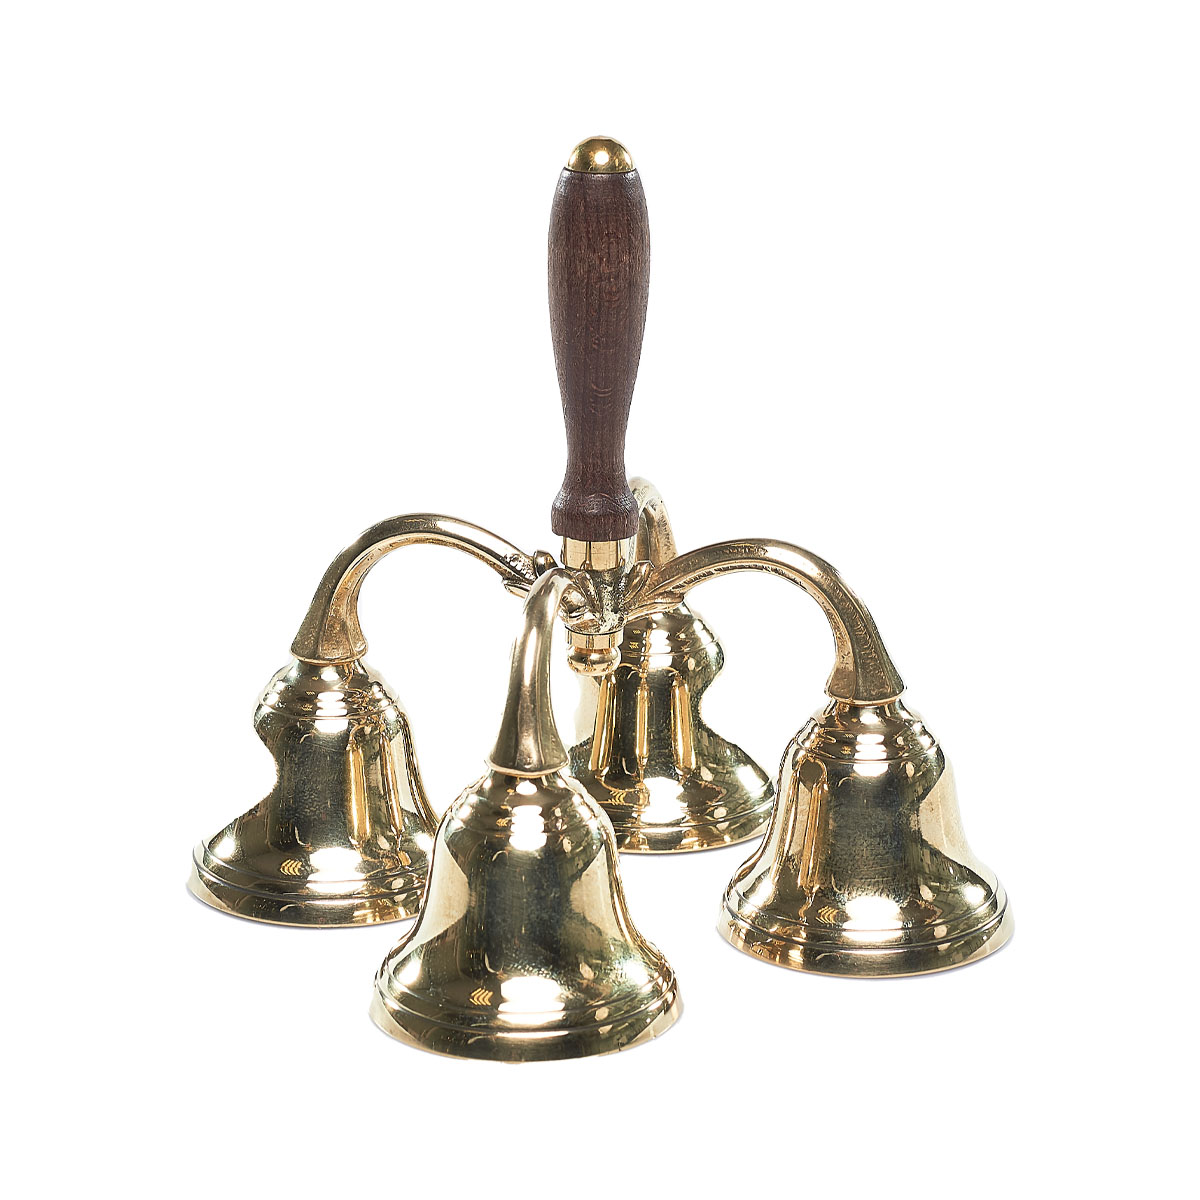 Campanello quattro campane con manico in legno